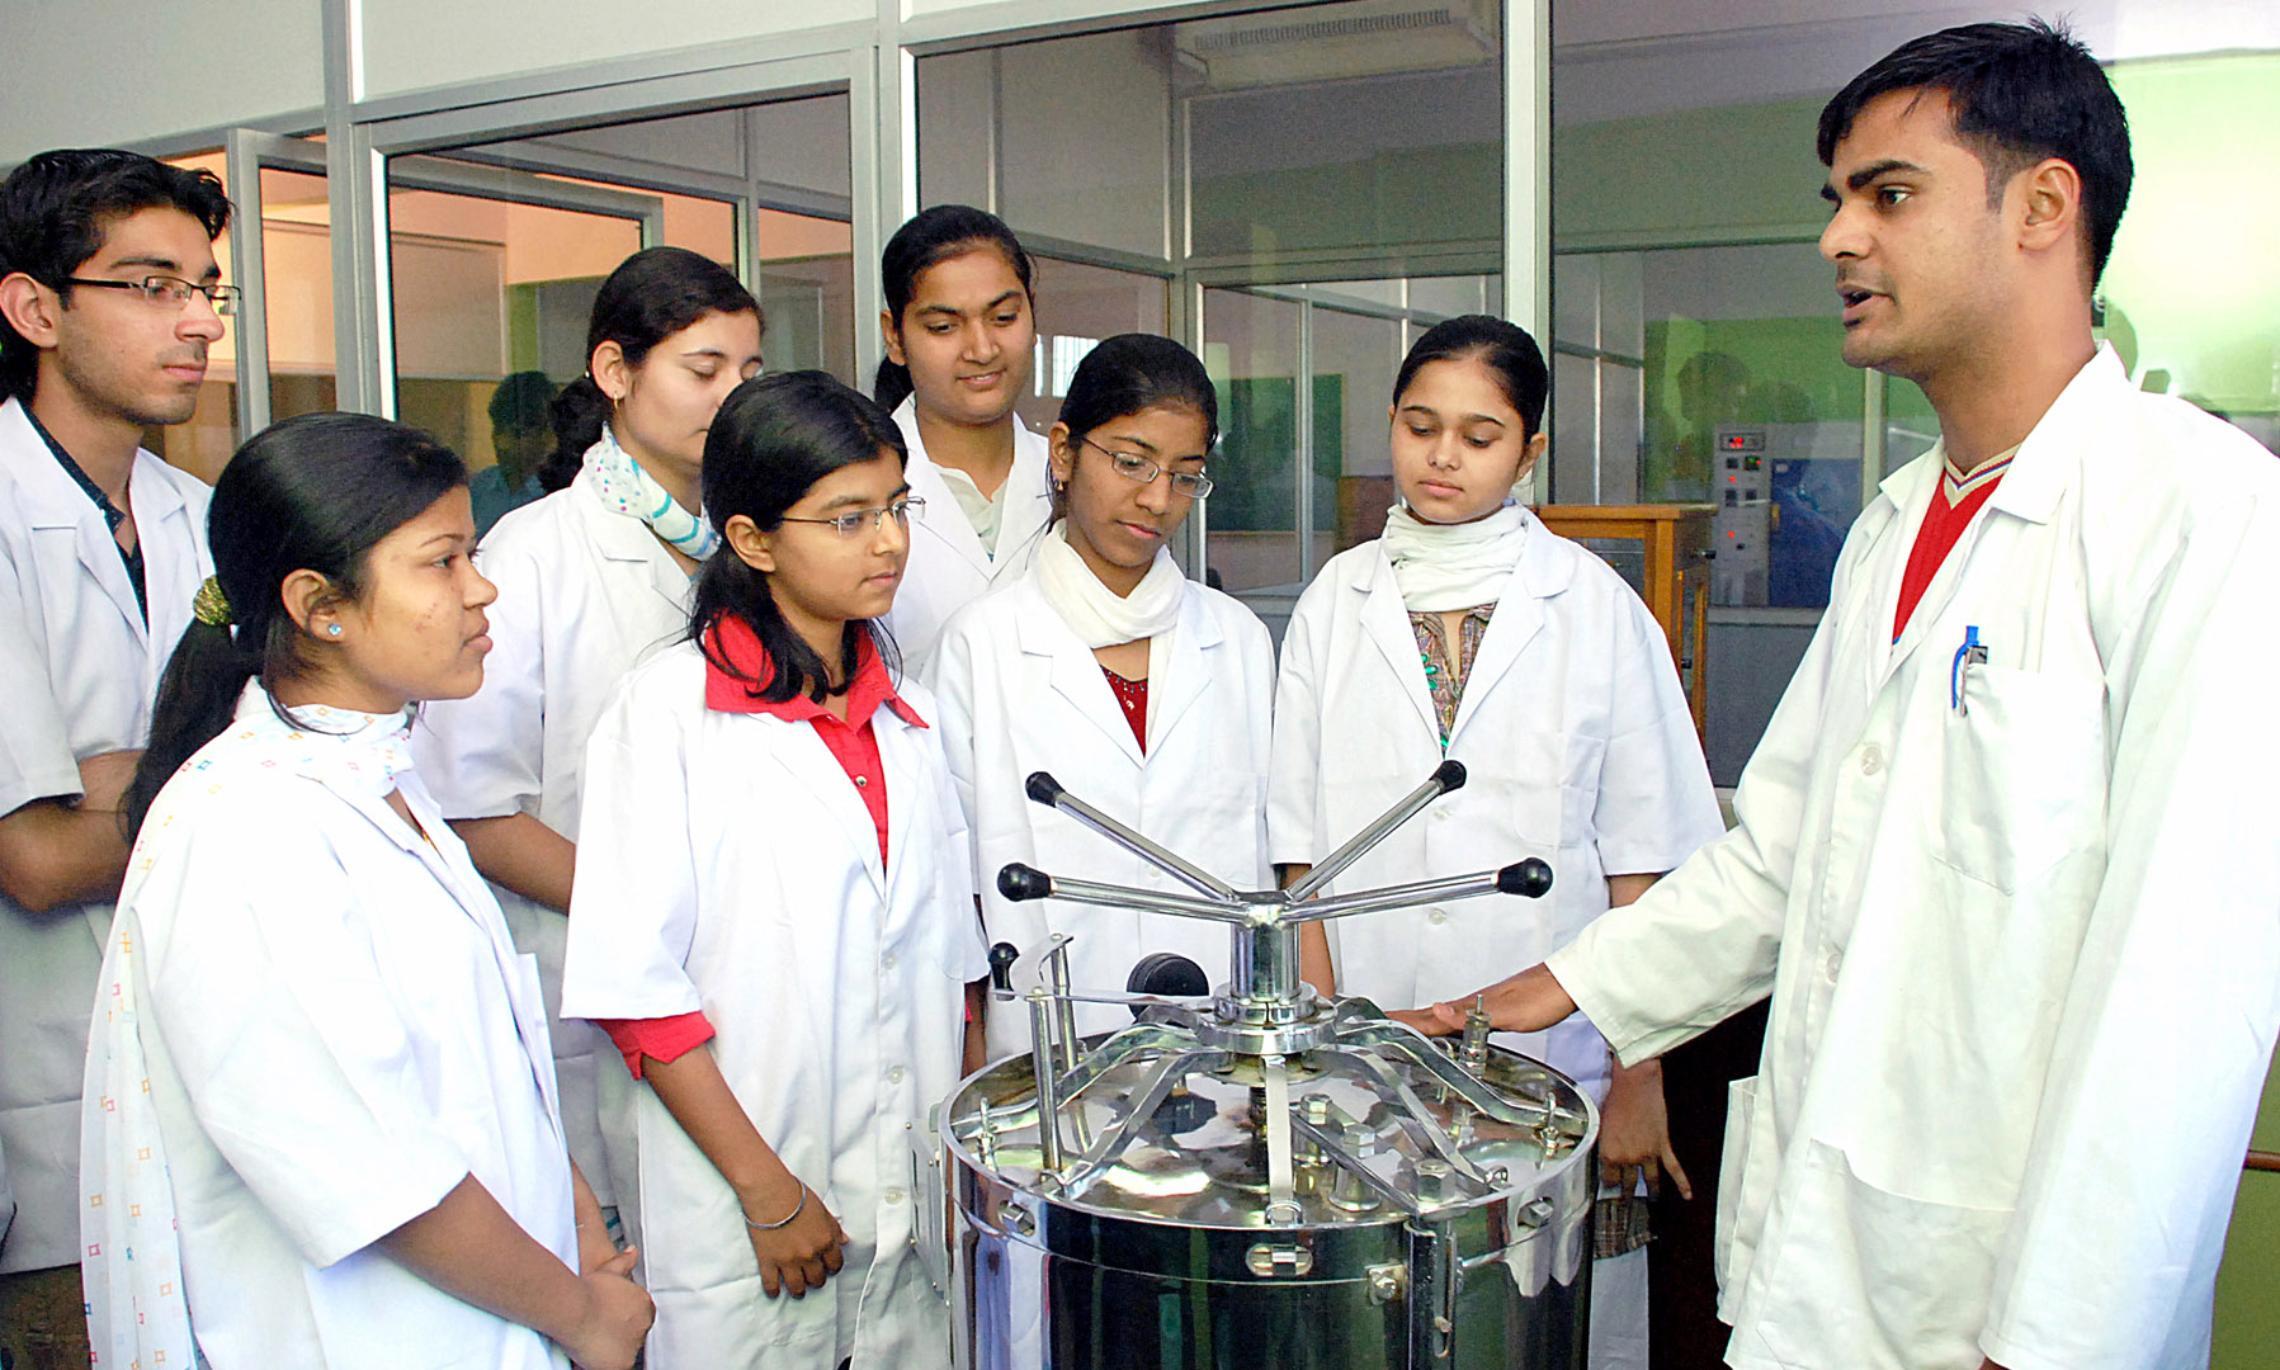 Будущие индийские фармацевты на занятиях в университете - они должны сделать Индию «мировой аптекой».